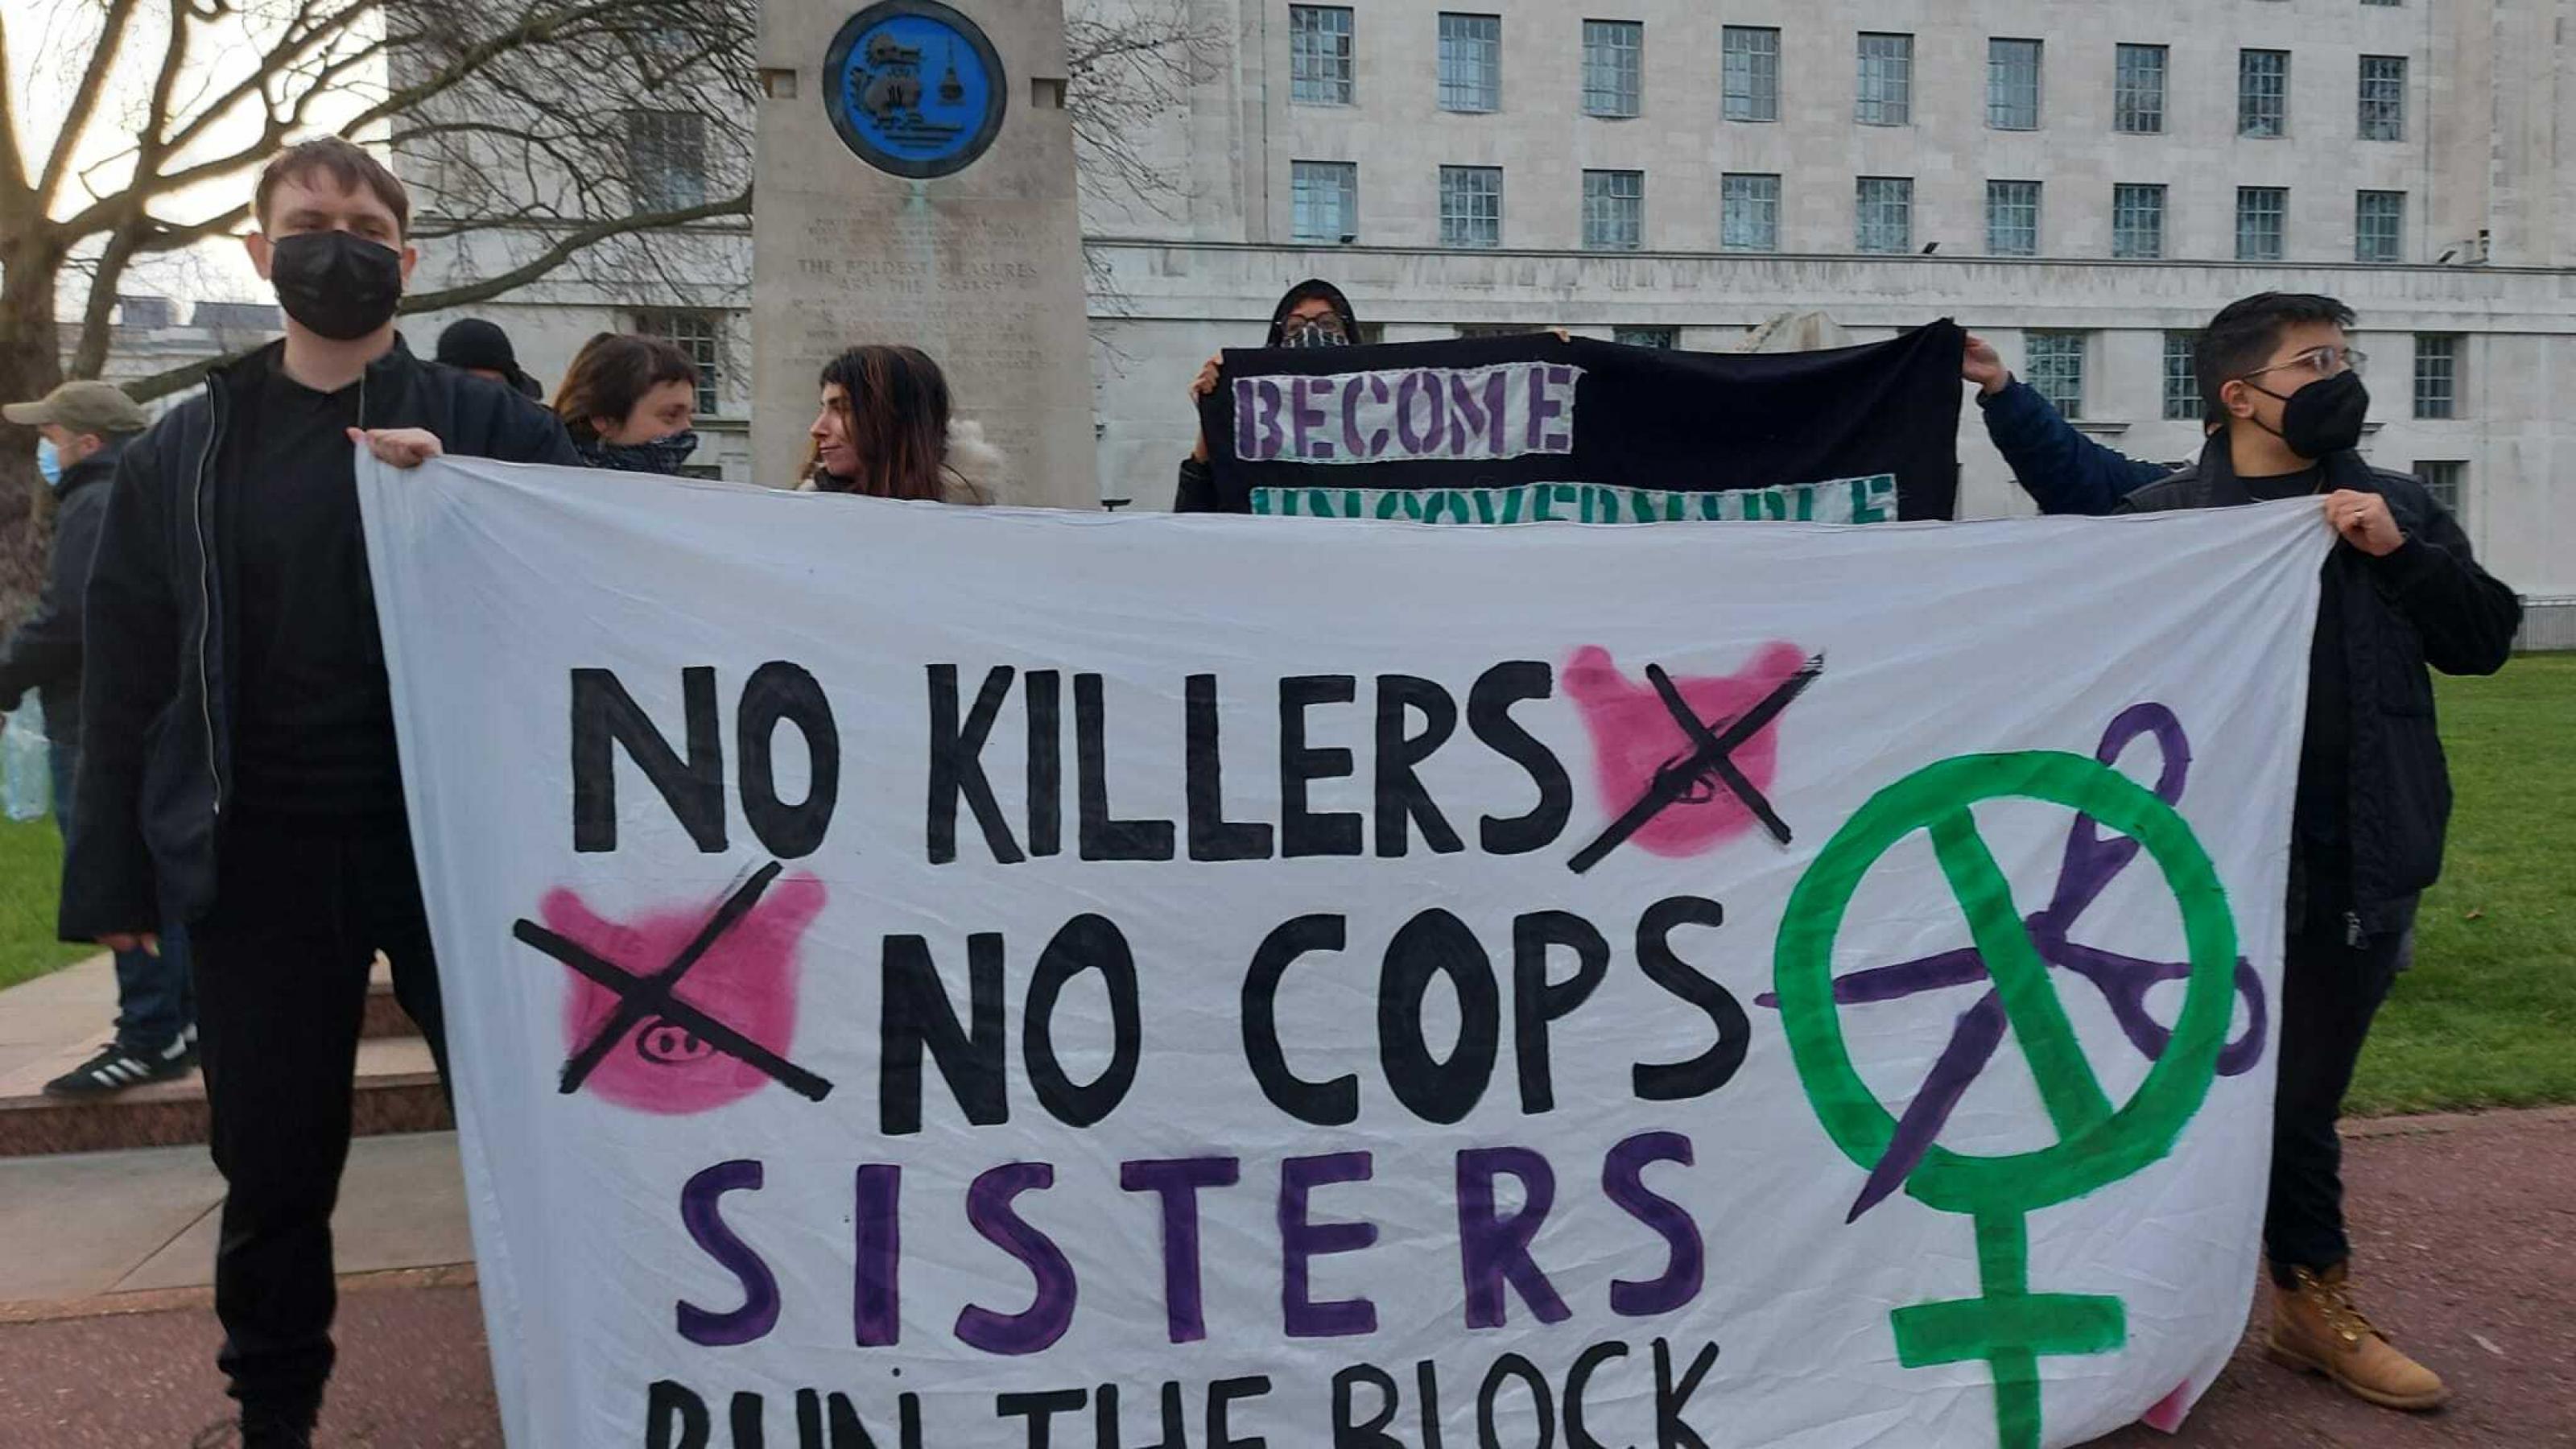 Protestierende halten ein Spruchband, auf dem steht: „No Killers, no cops, Sisters run the block“